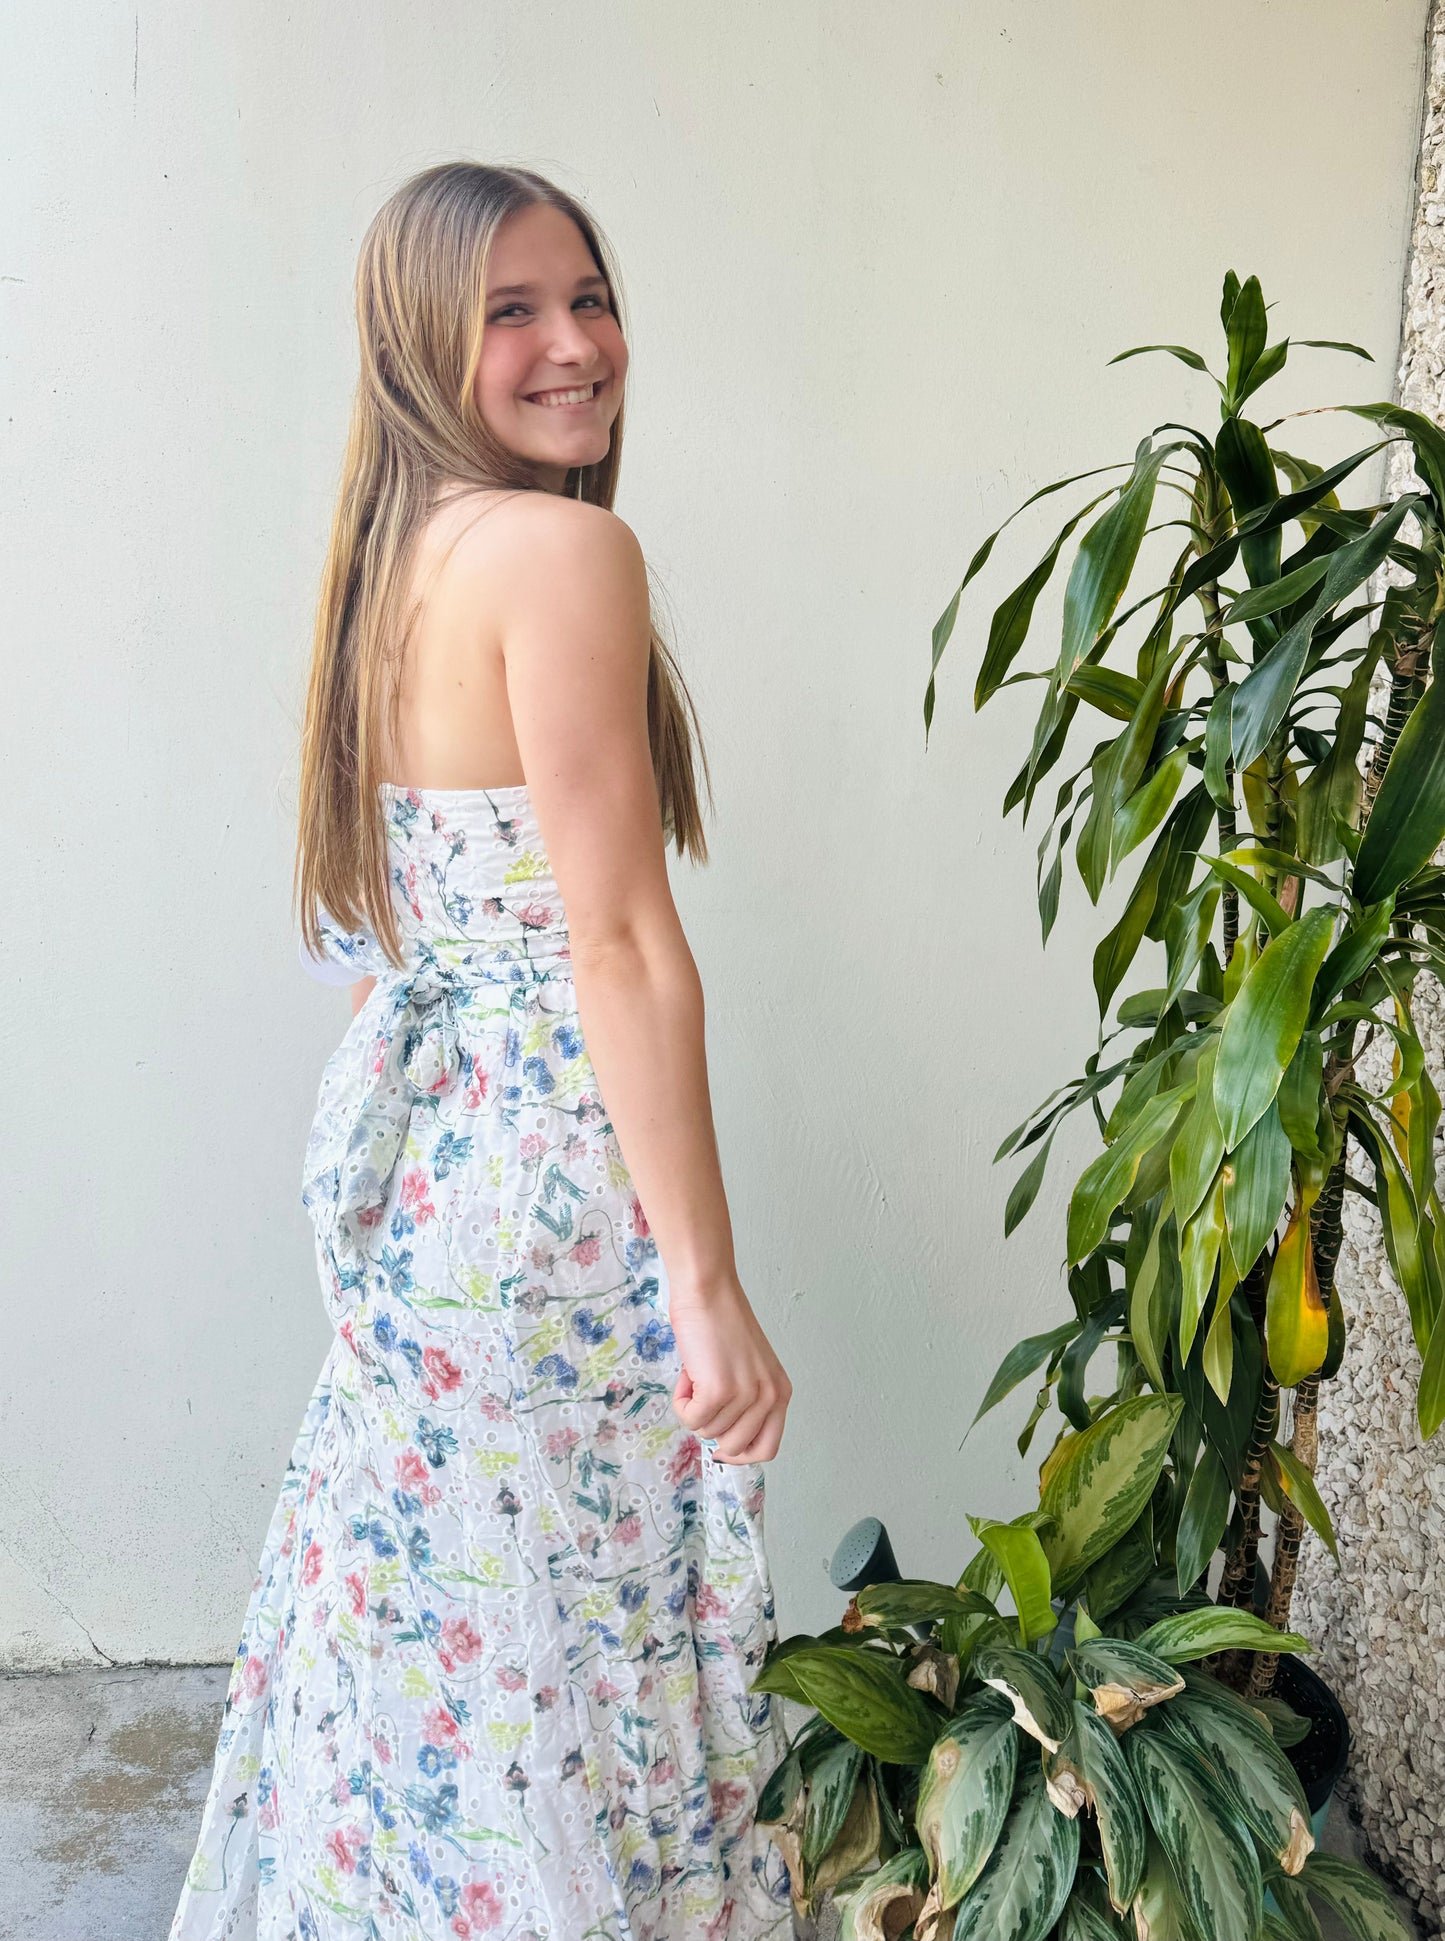 Apparel- Storia Eyelet Floral Maxi Dress